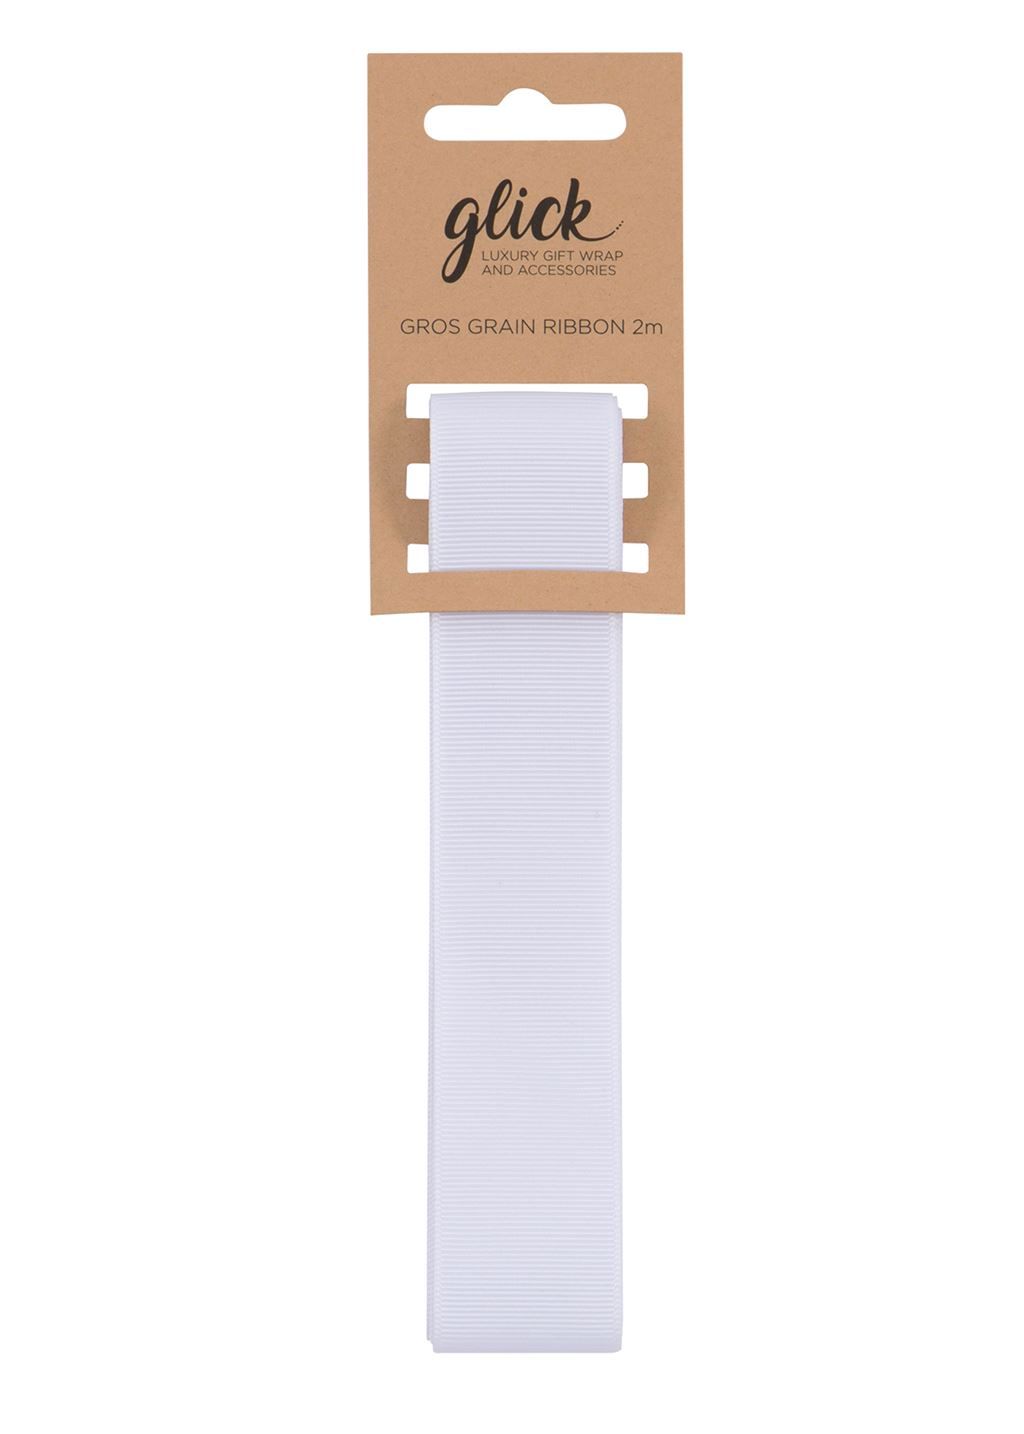 Grosgrain Ribbon 2M - WHITE - Ribbons For Gifting - WHITE Grosgrain RIBBON 